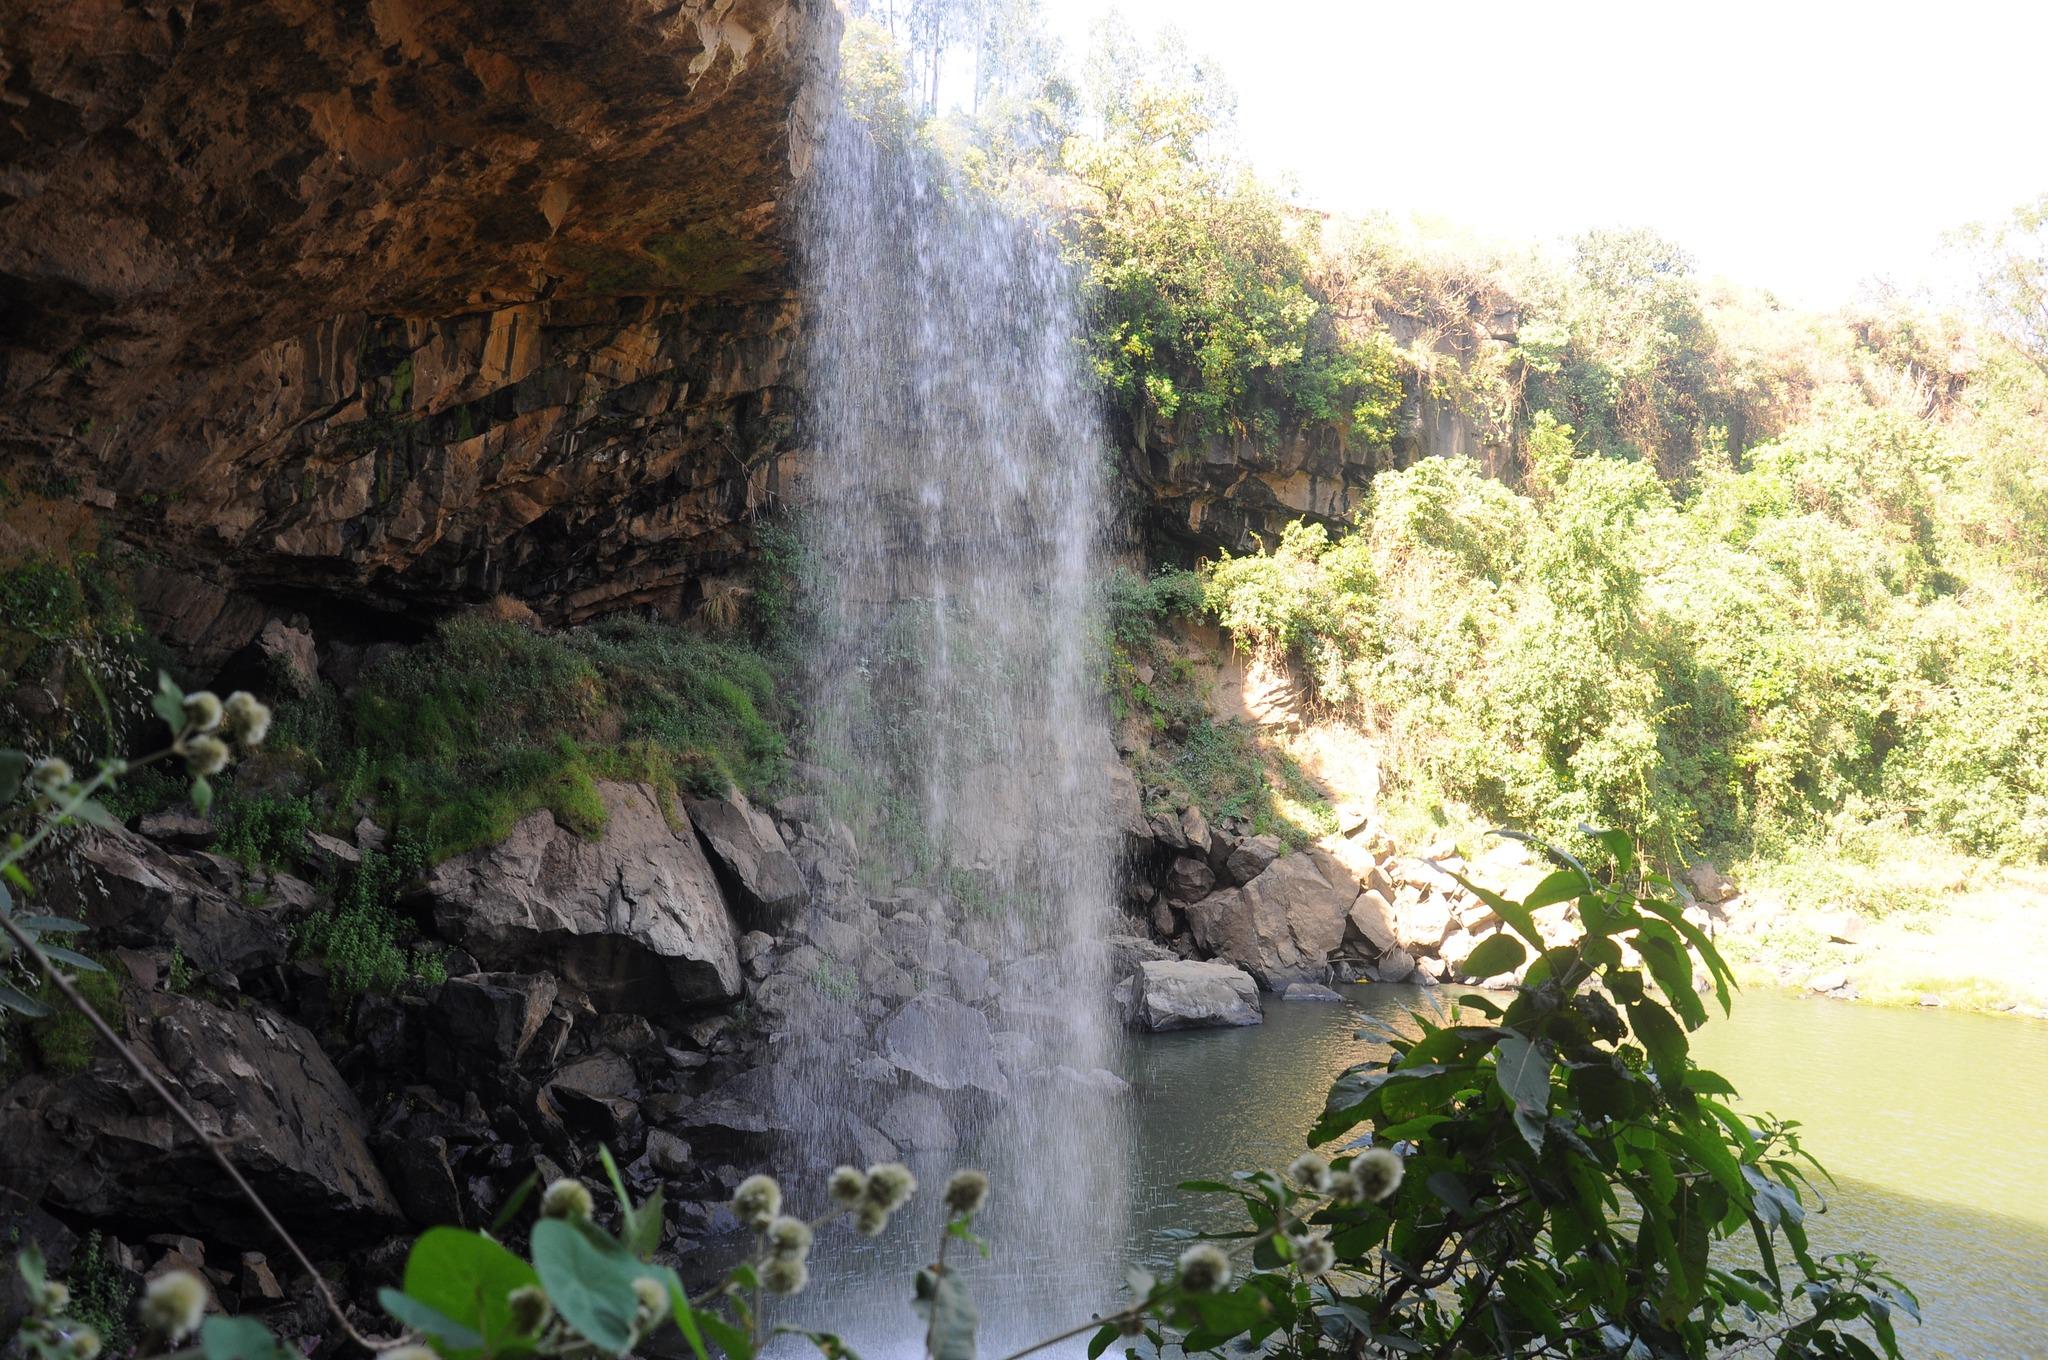  Wiza waterfall